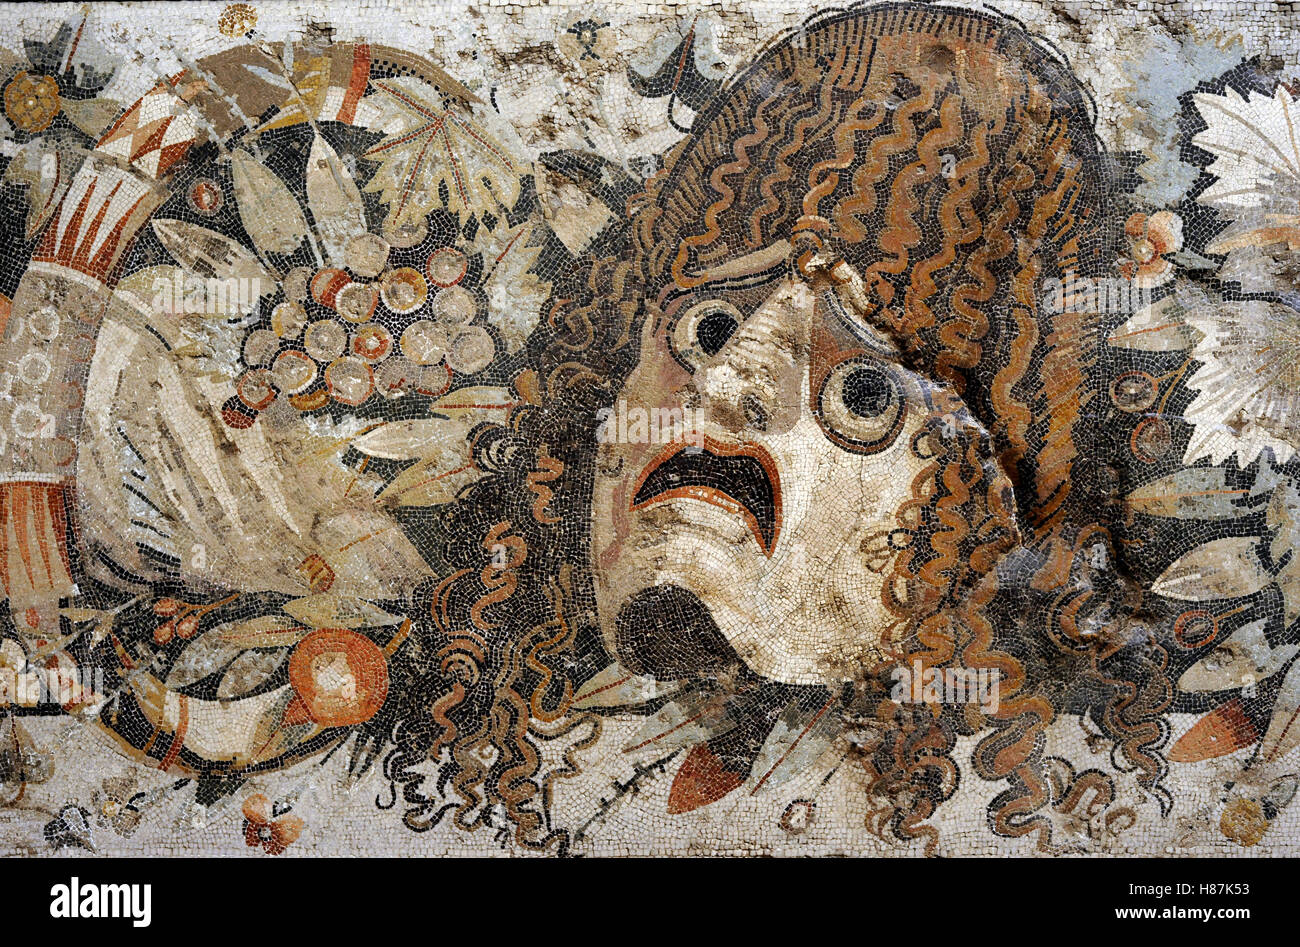 Römisches Mosaik. Tragische Maske. Aus dem Hause Faun, Pompeji. 2. Jahrhundert n. Chr. Nationales Archäologisches Museum, Naples. Italien. Stockfoto